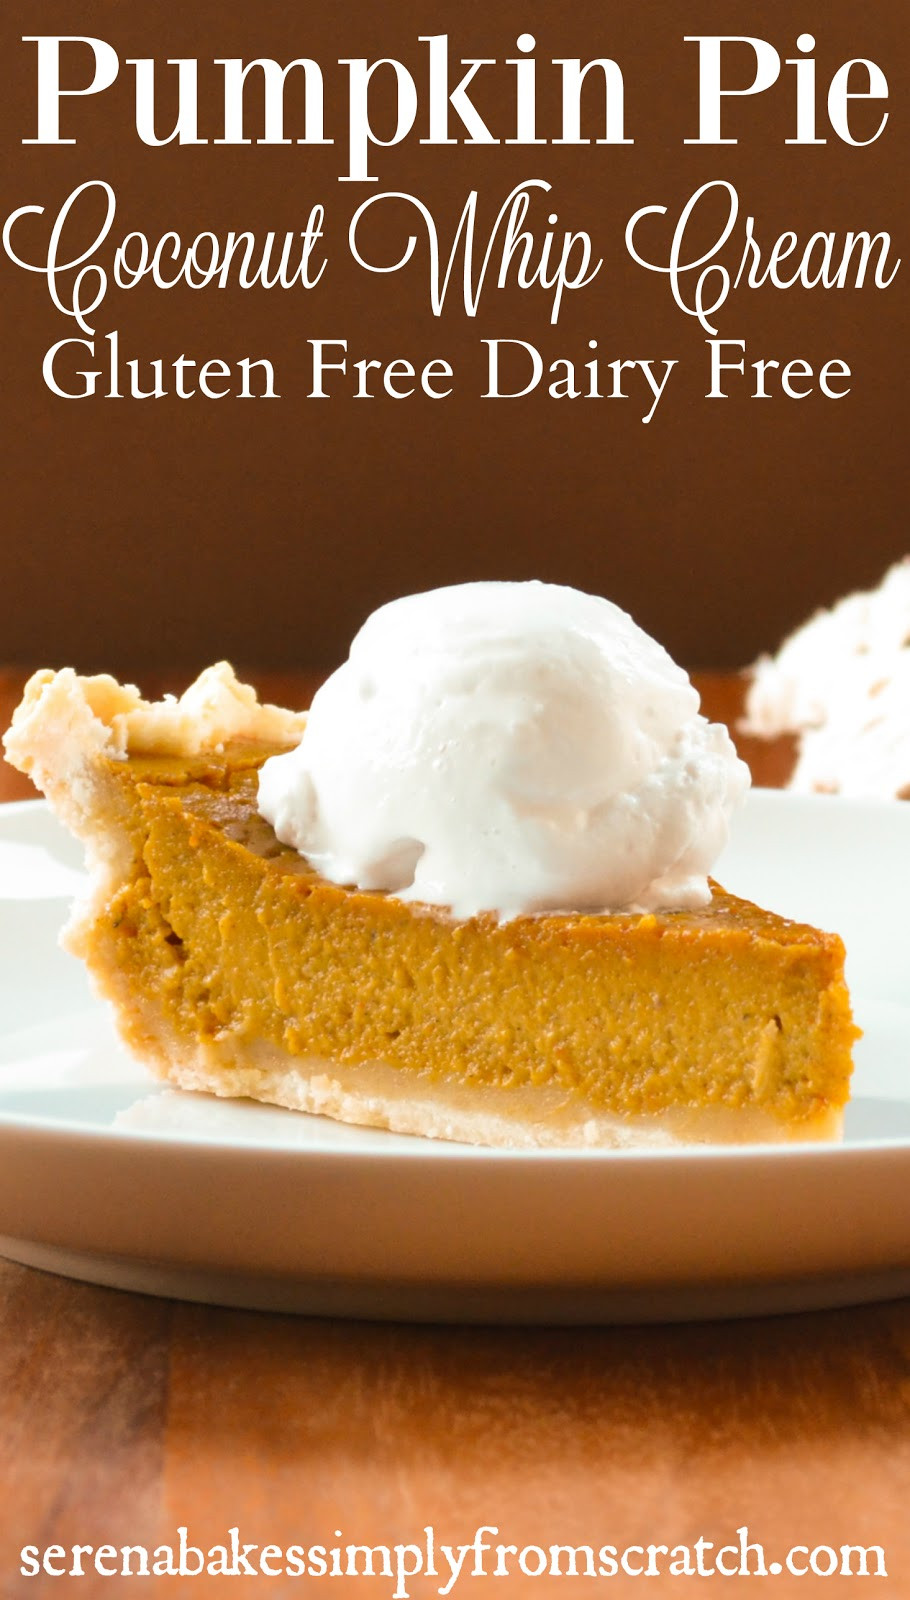 Dairy Free Gluten Free Pumpkin Pie
 Gluten Free Dairy Free Pumpkin Pie With Coconut Whip Cream